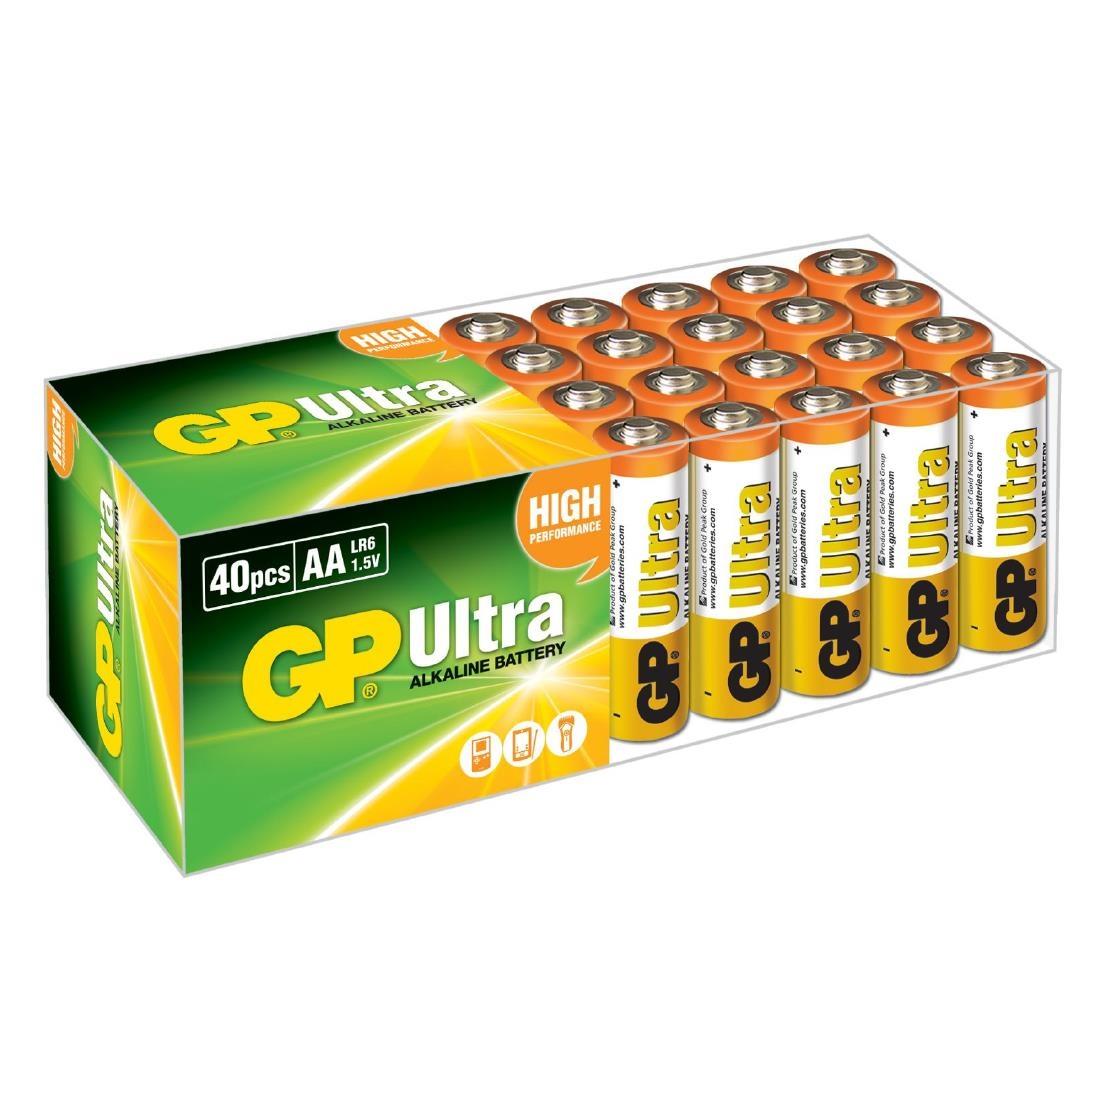 GP Ultra Battery Alkaline AA (Pack of 40) - FS713  - 1